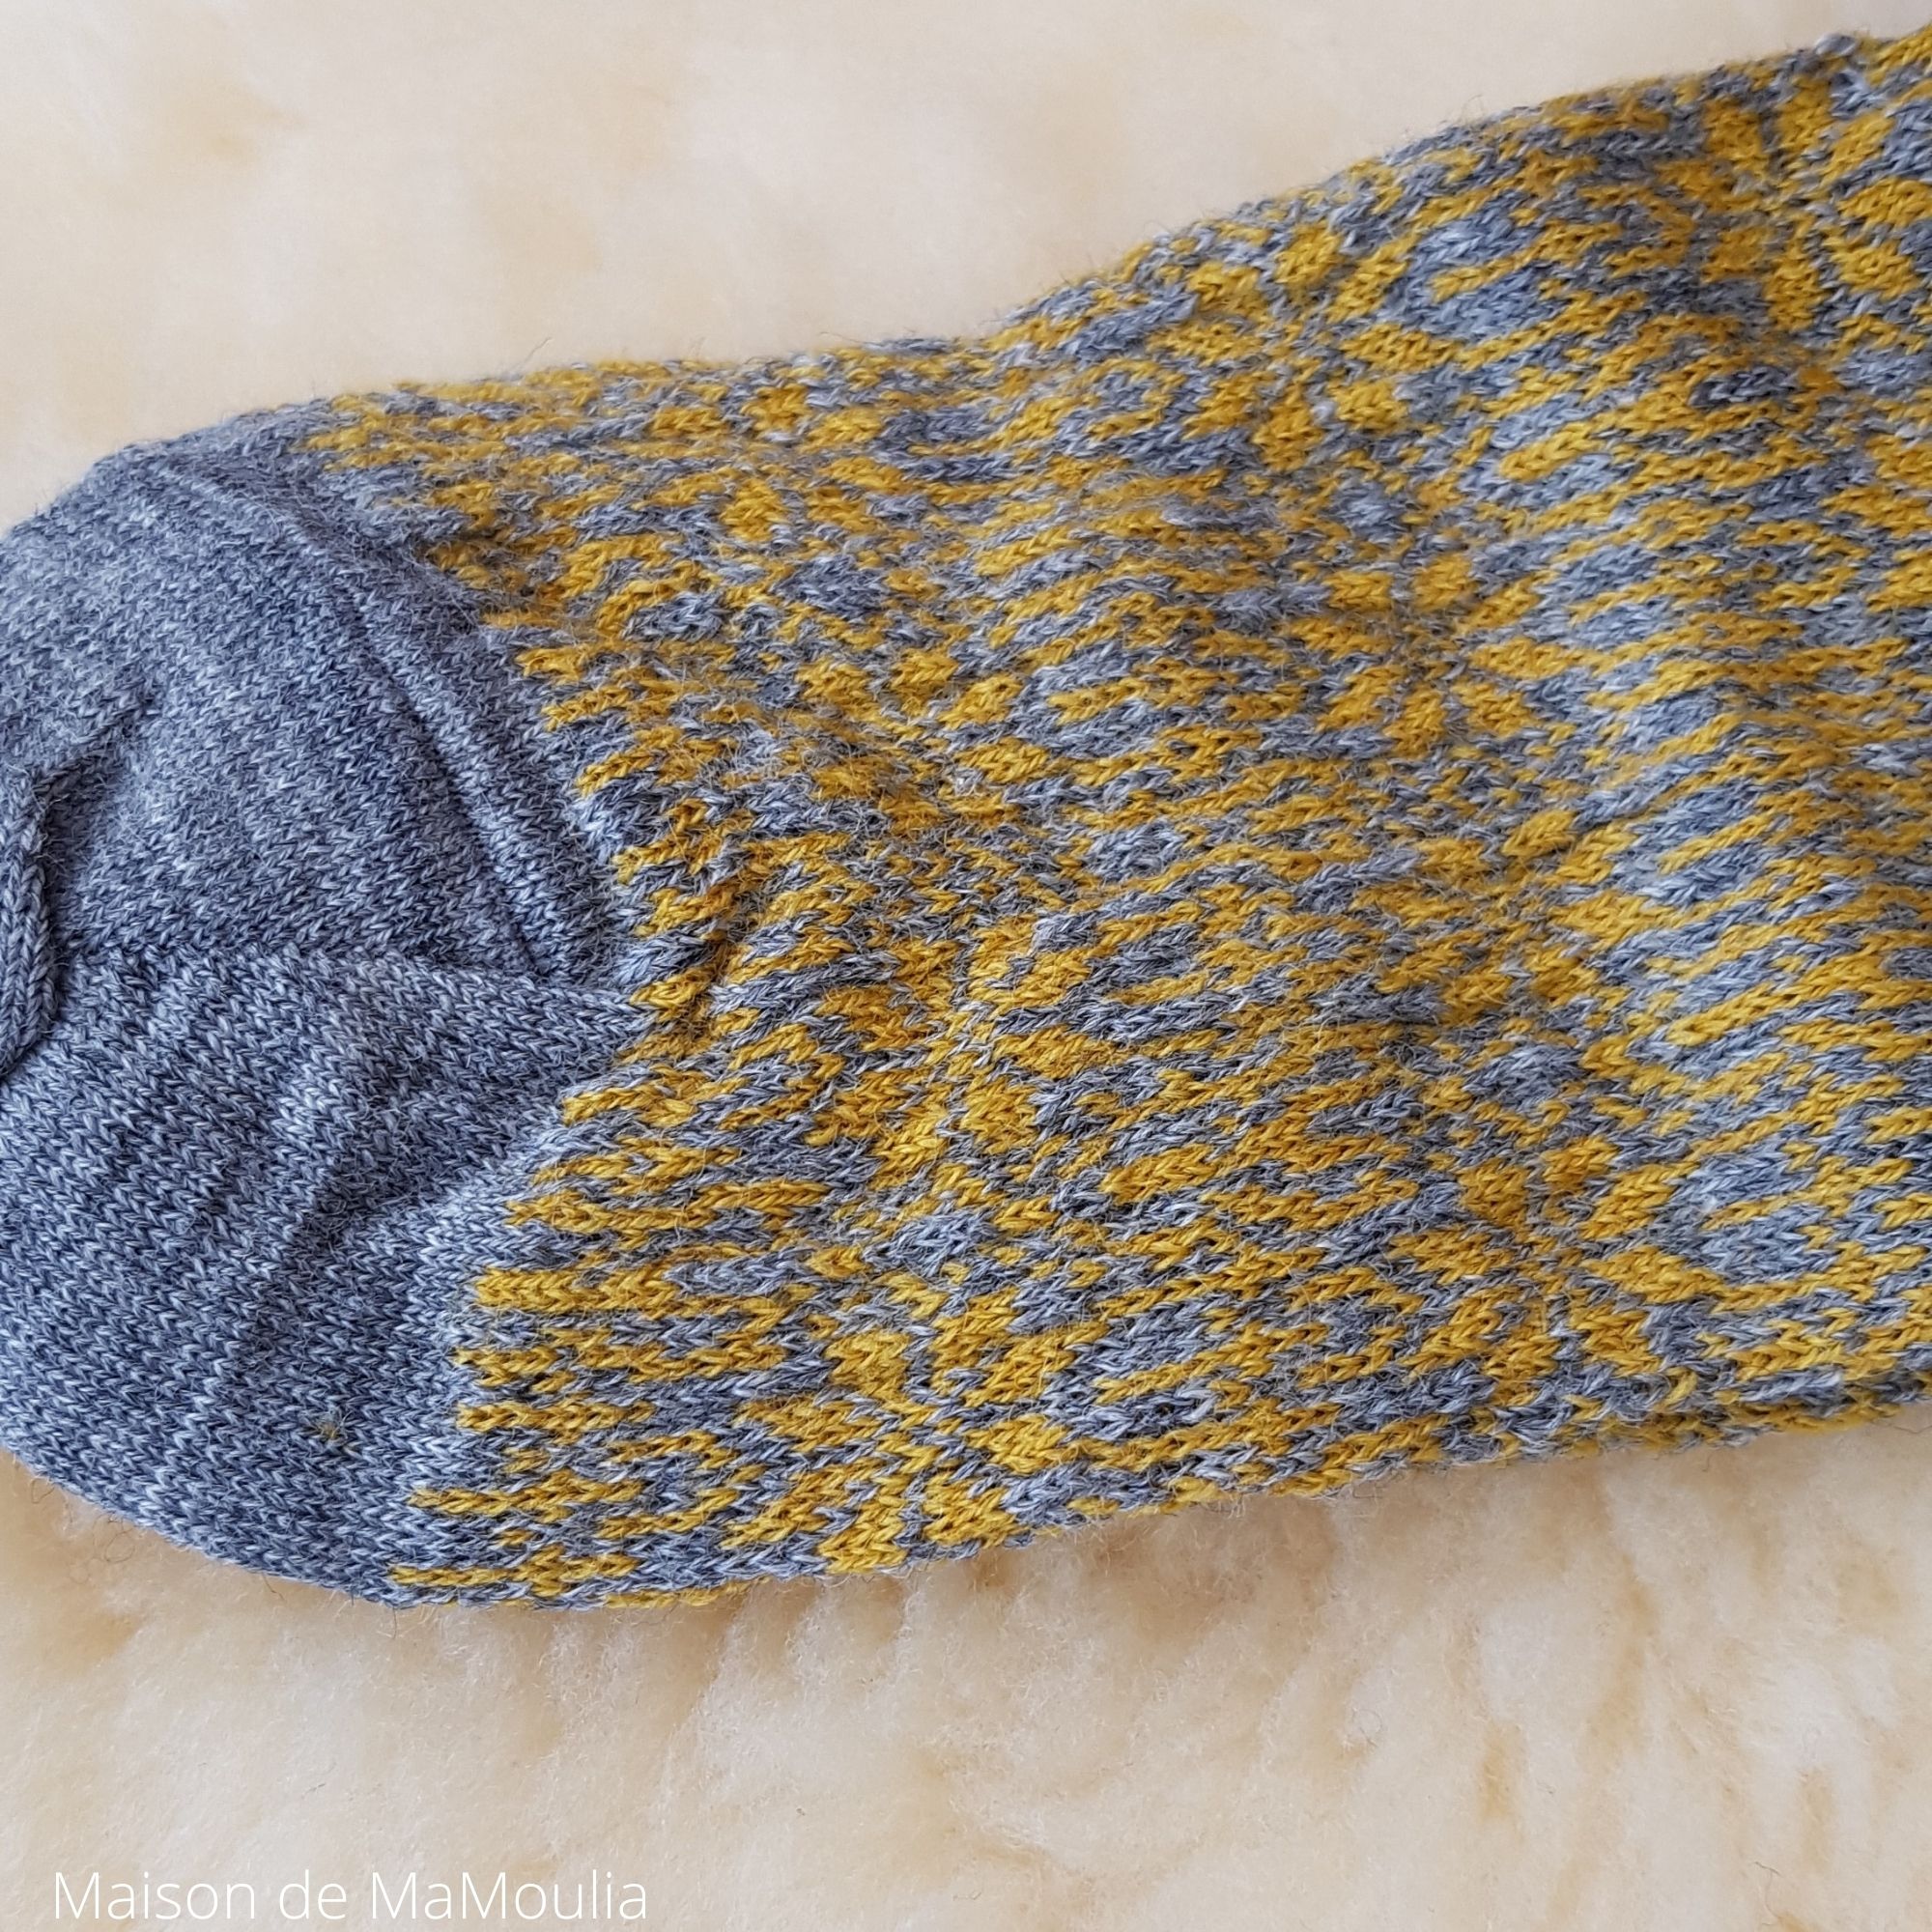 156-chaussettes-pure-laine-bio-ecologique-hirsch-natur-maison-de-mamoulia-norvegienne-adulte-gris-moutarde-fine